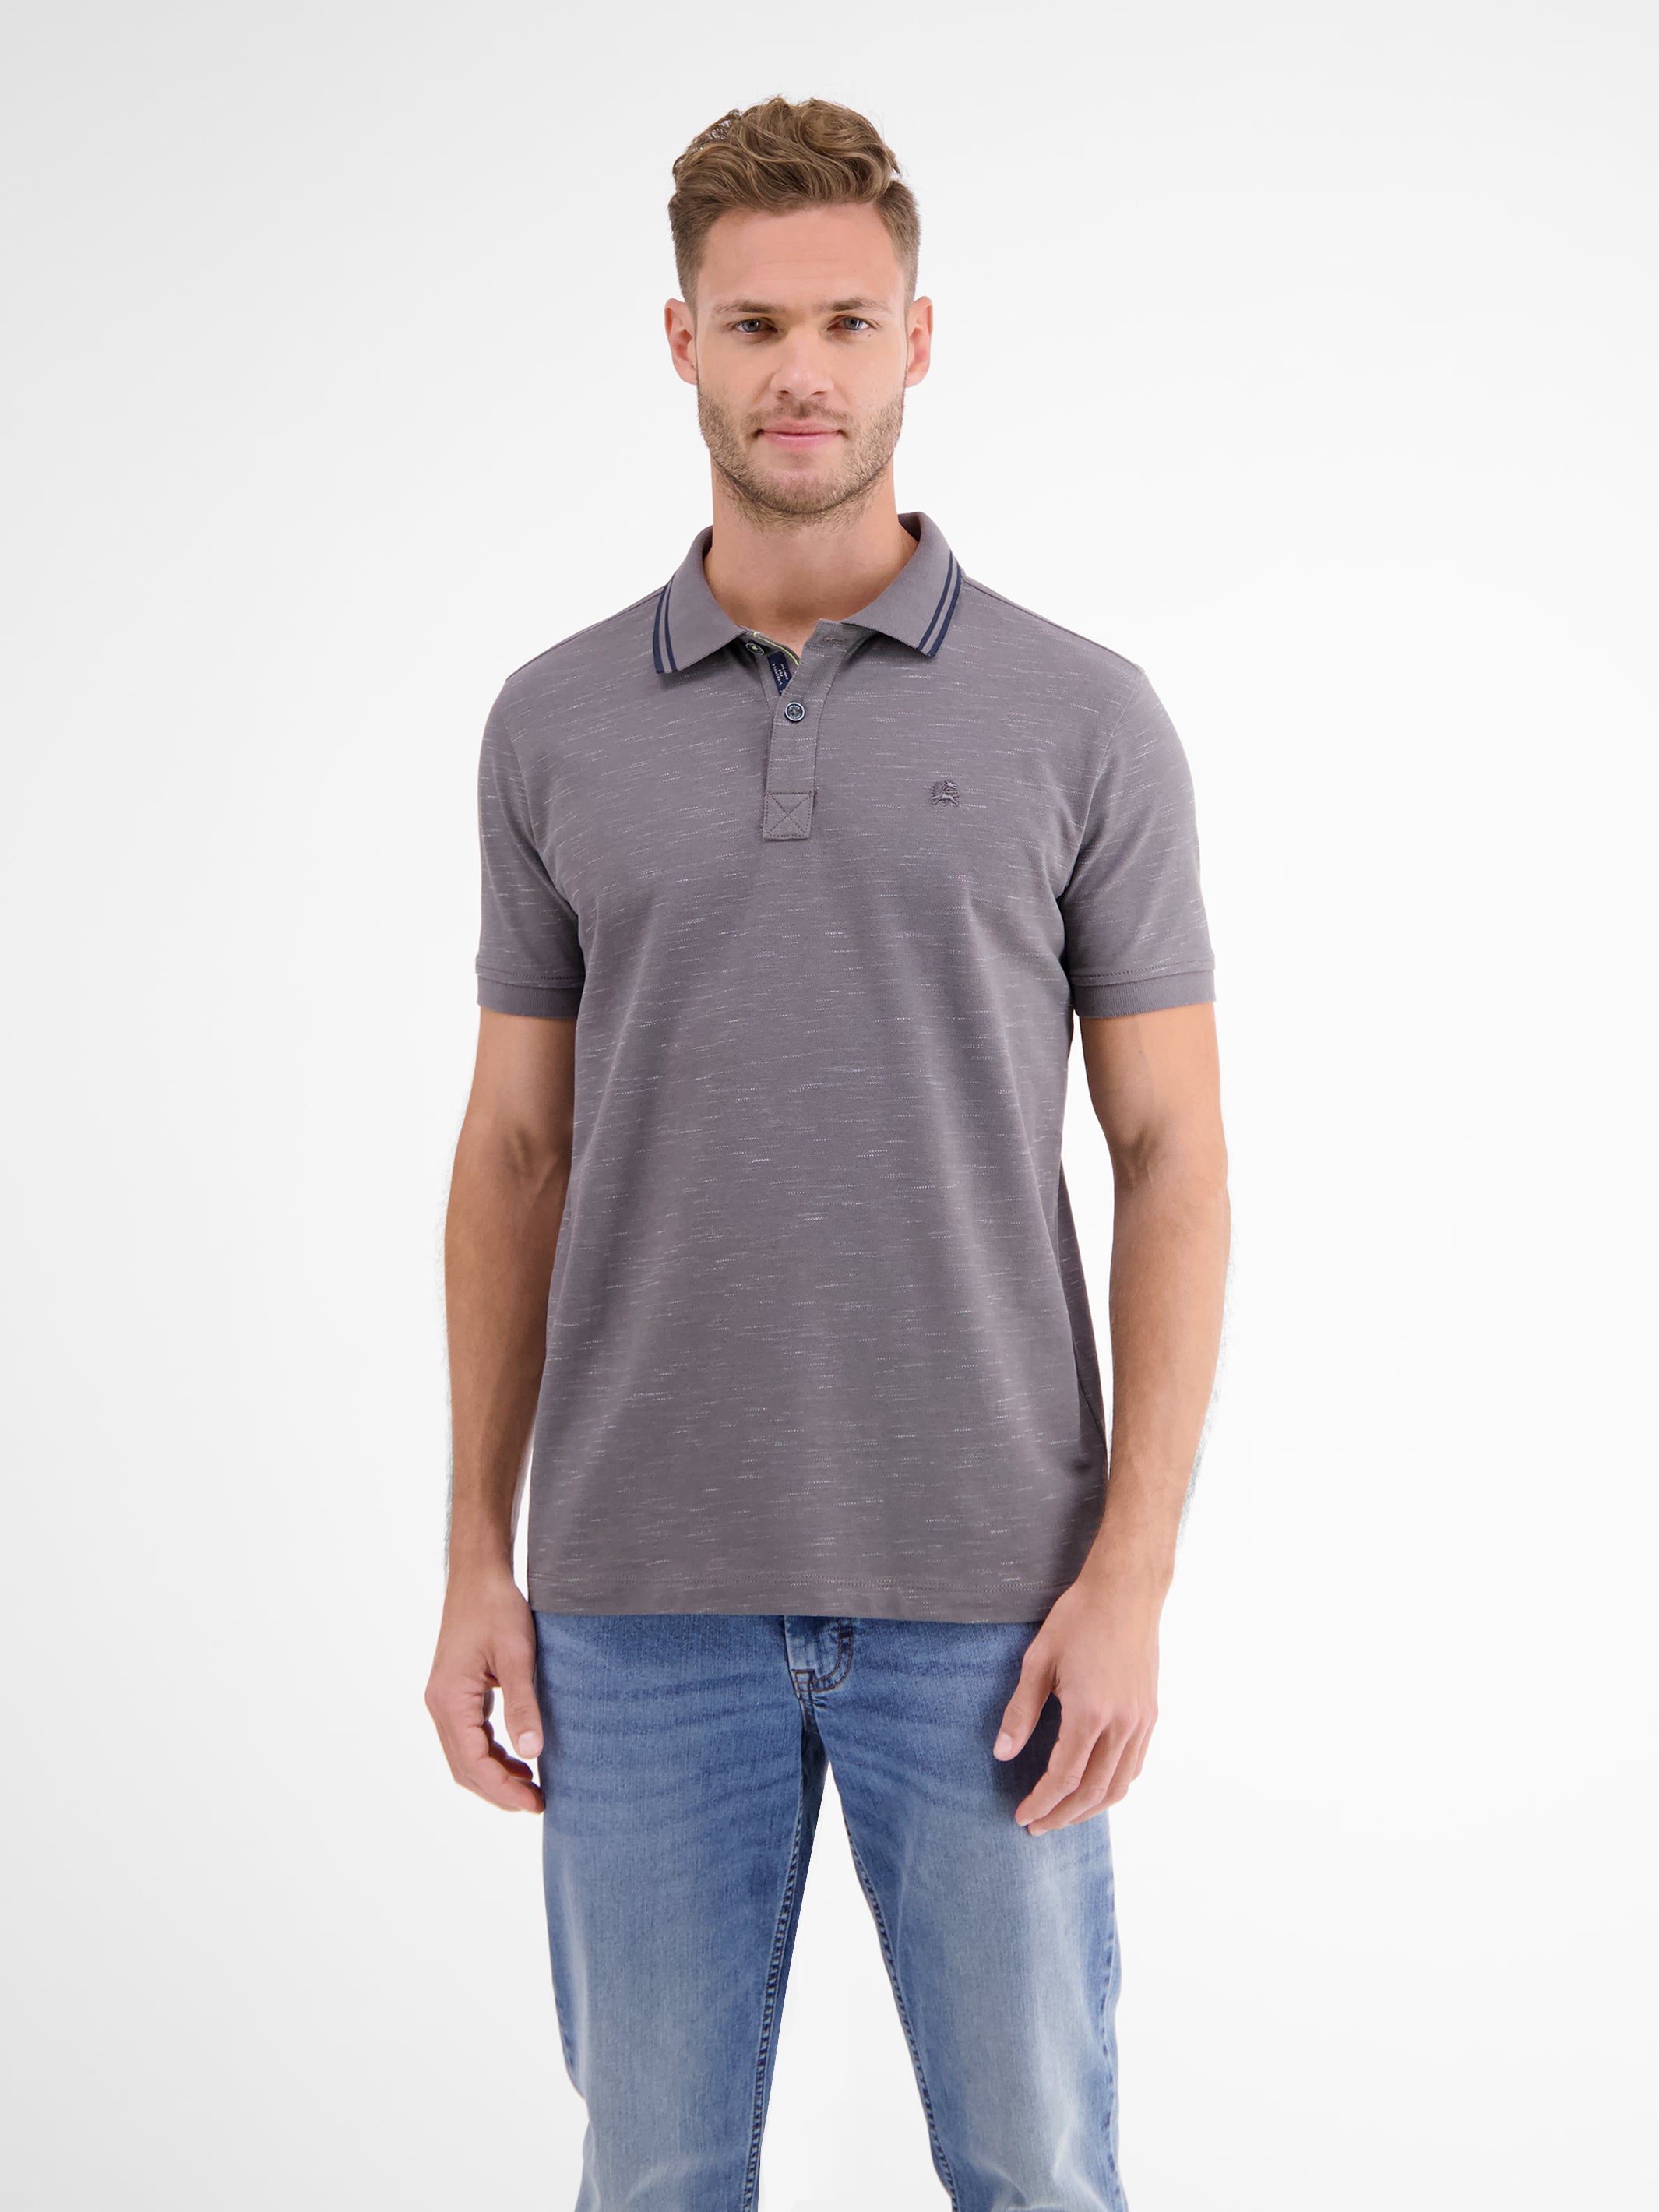 – two-tone piqué in LERROS Polo SHOP shirt